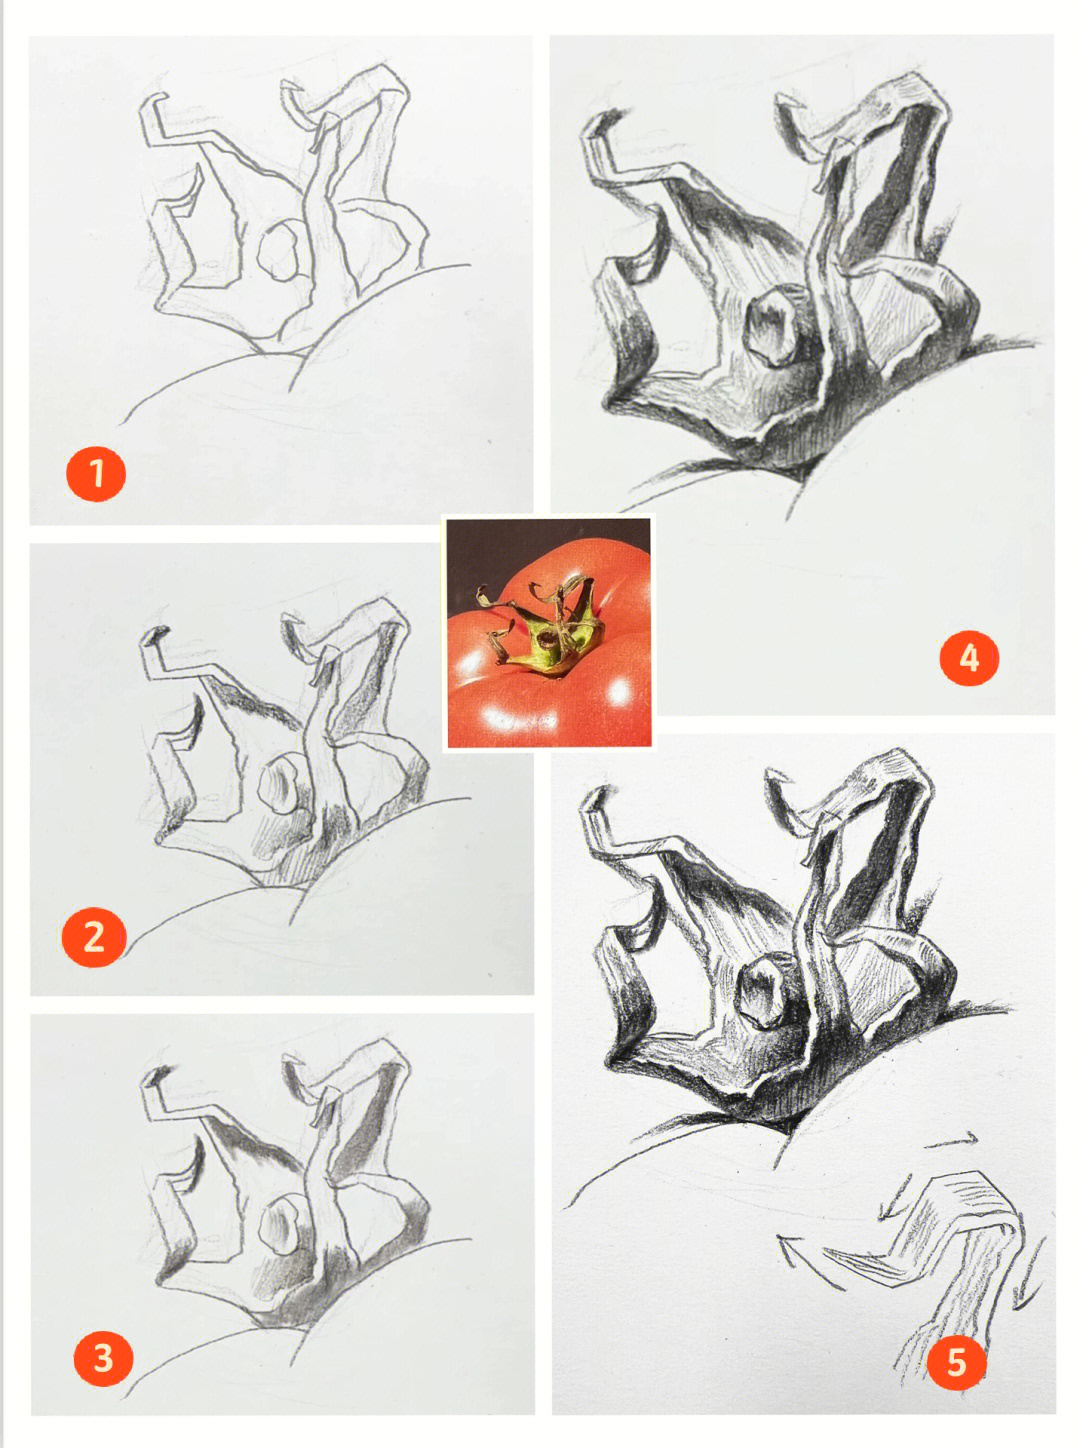 素描叶子的画法步骤图图片